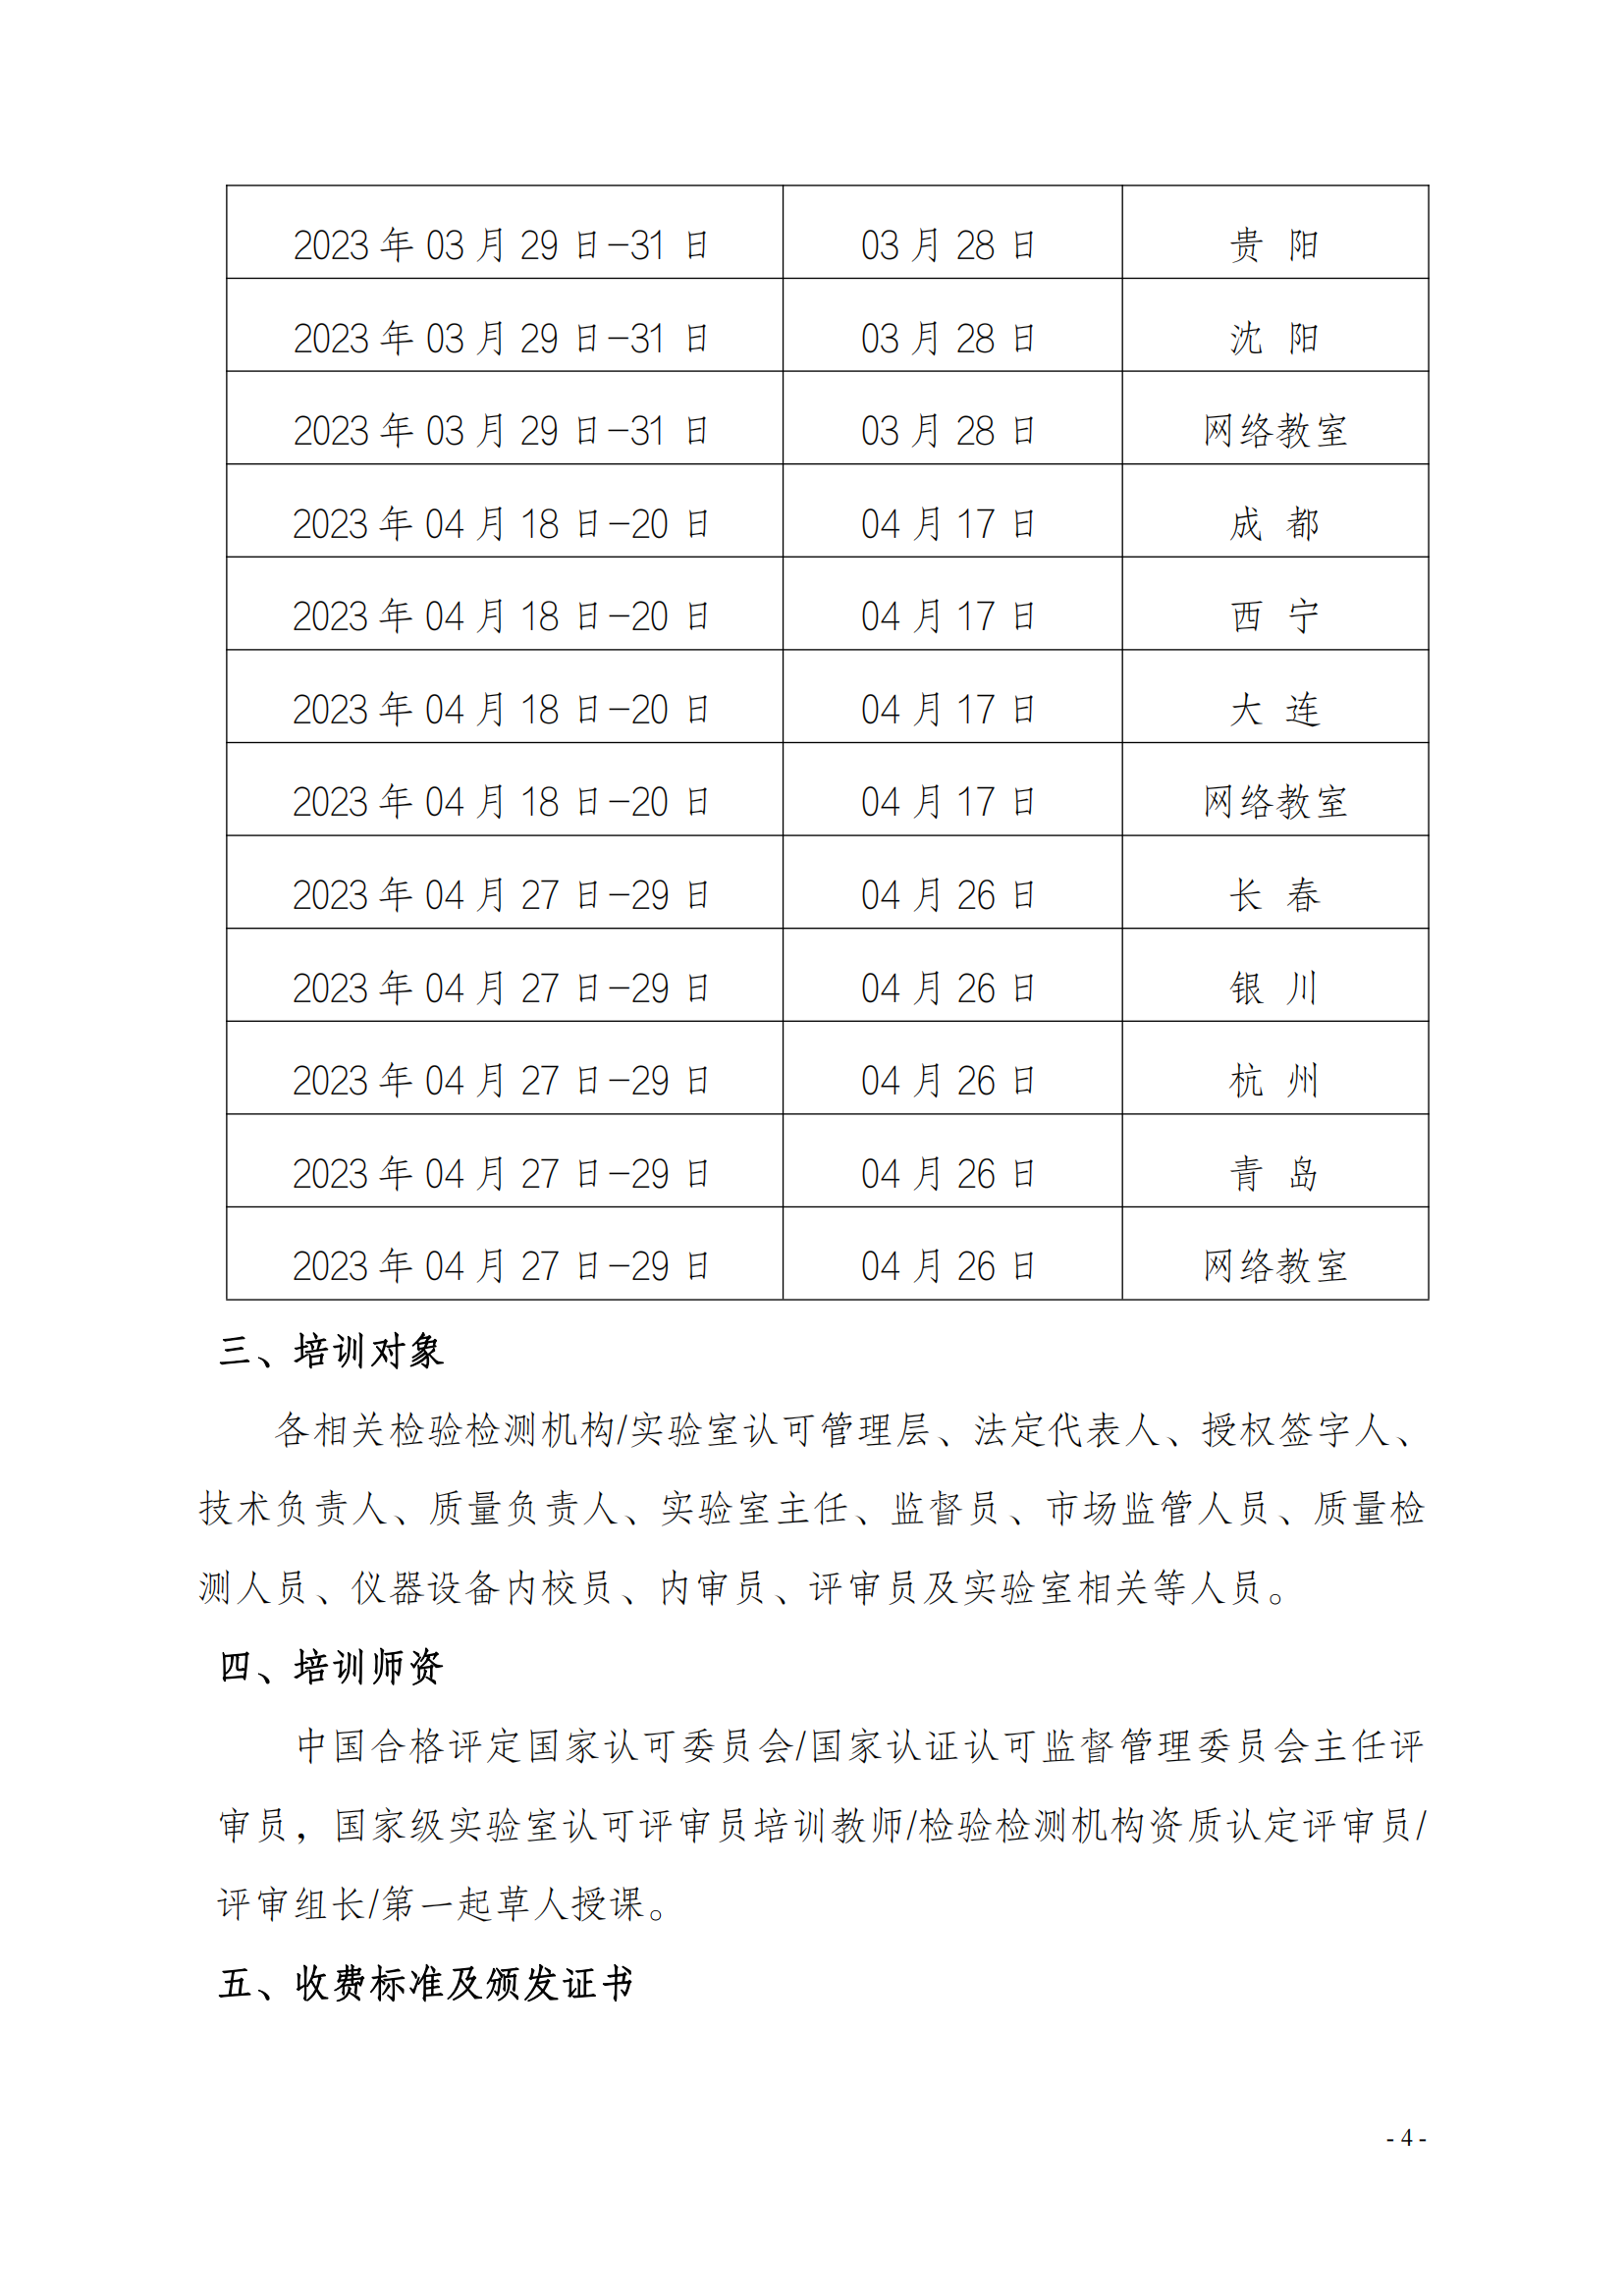 中质国培23年02-04月质量监督 质量控制及管理层岗位能力提升课_03.png